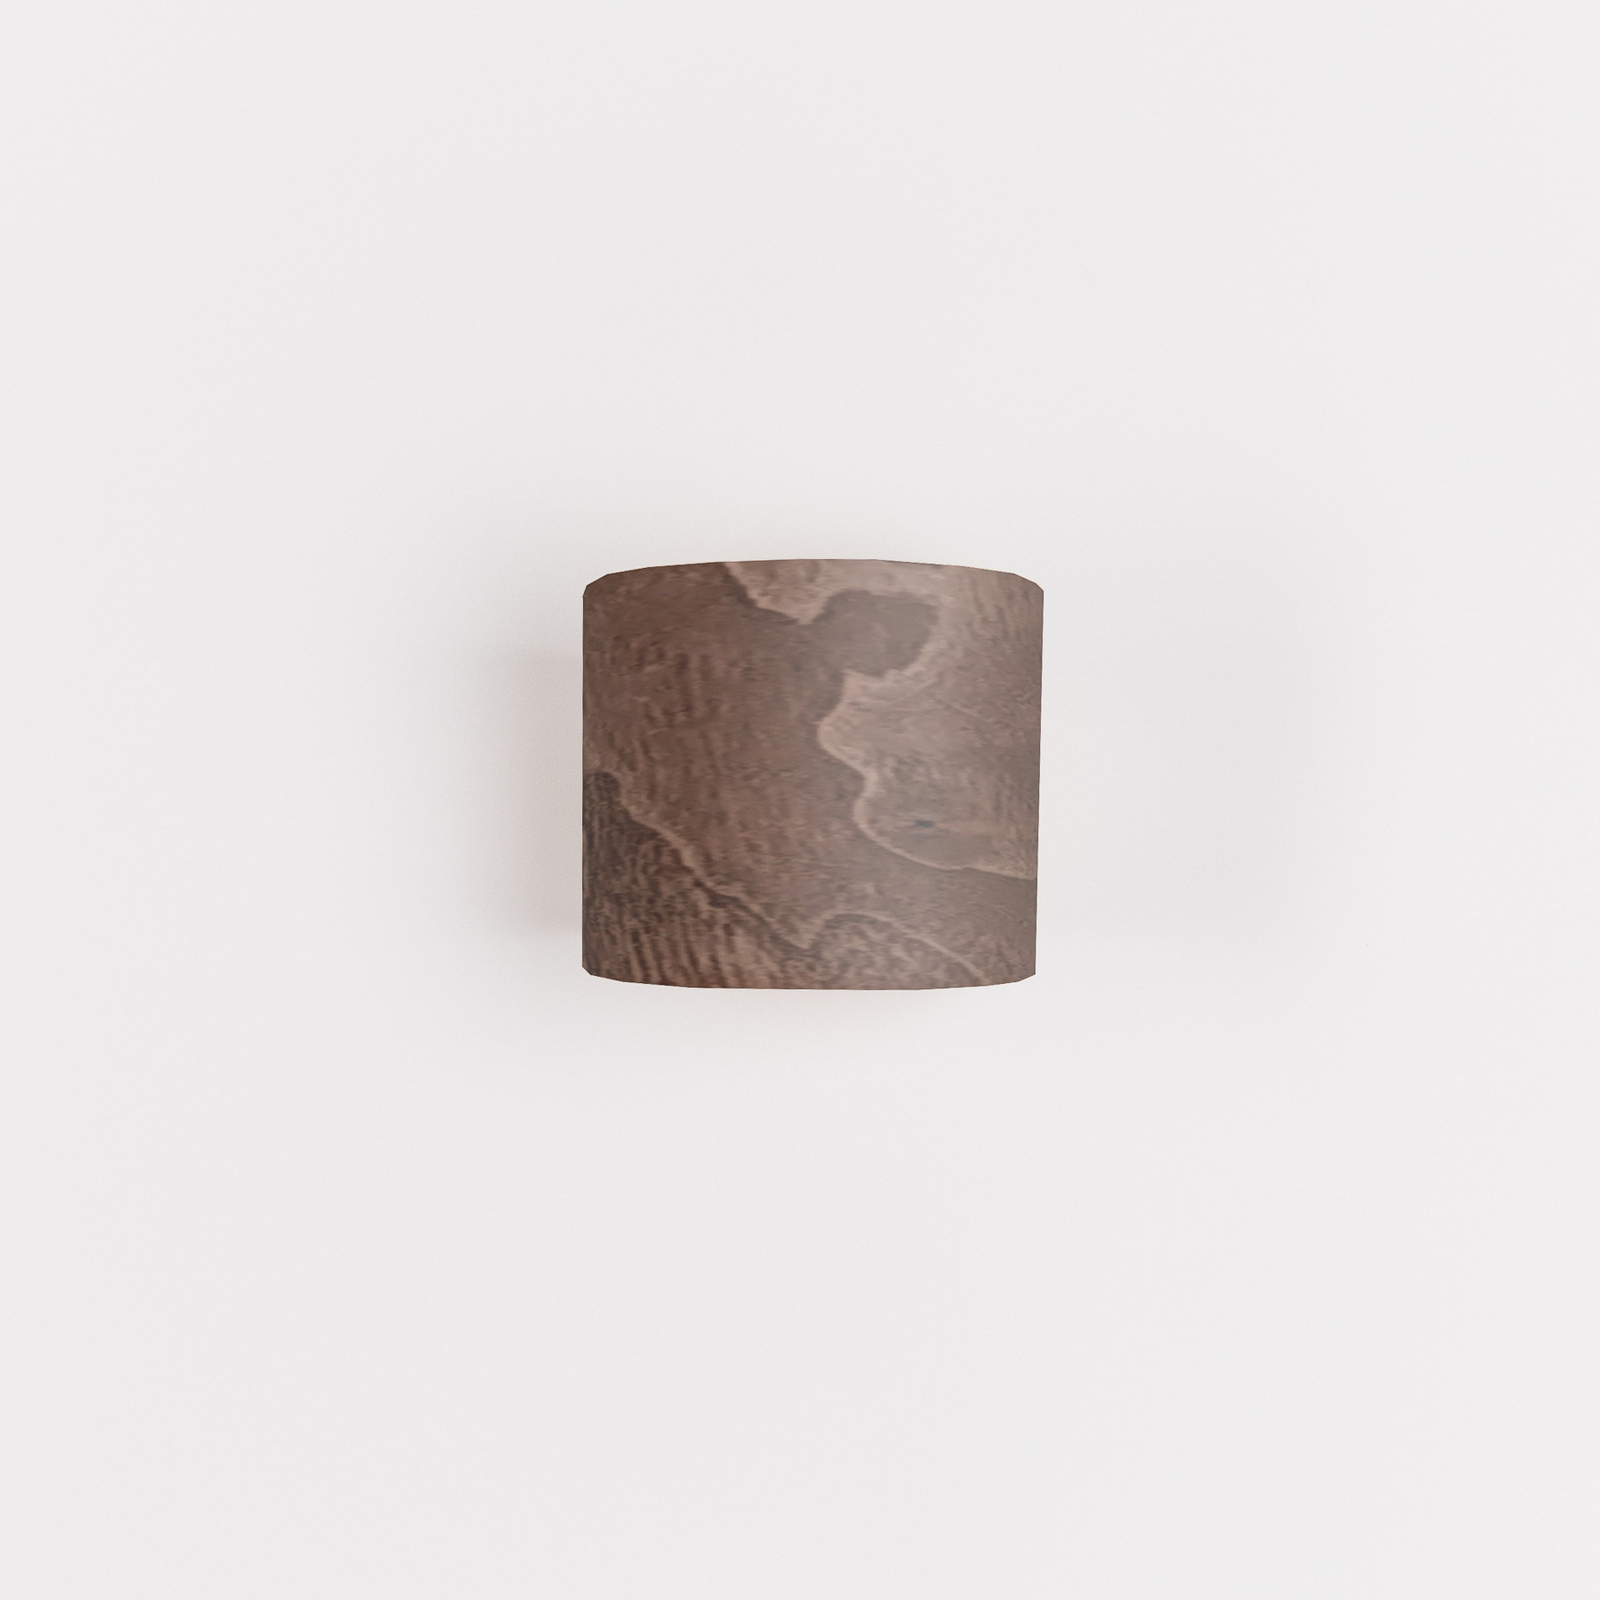 ALMUT 1411 wall light cylindrical walnut wood